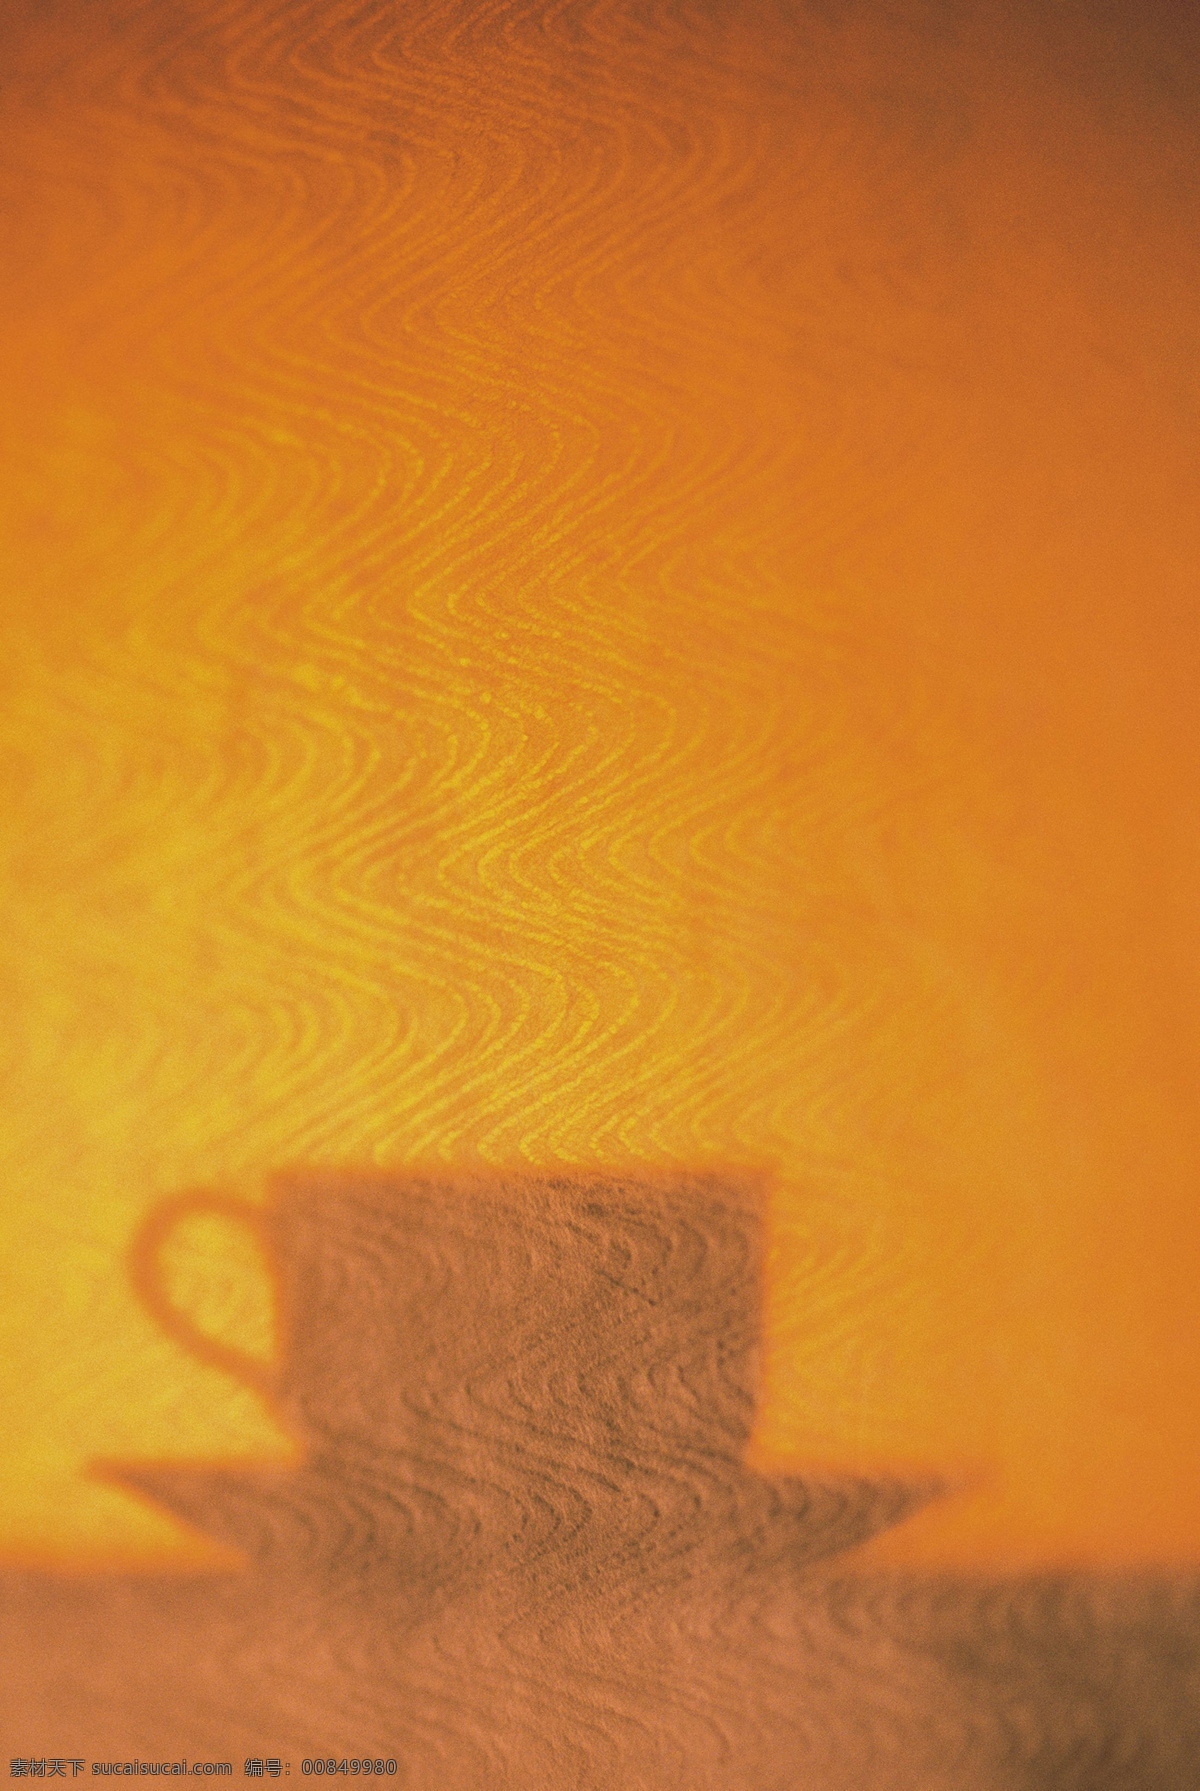 物件光影投射 咖啡杯 光影 投射 底纹 背景 插图 暖色调 配图 休闲 生活素材 生活百科